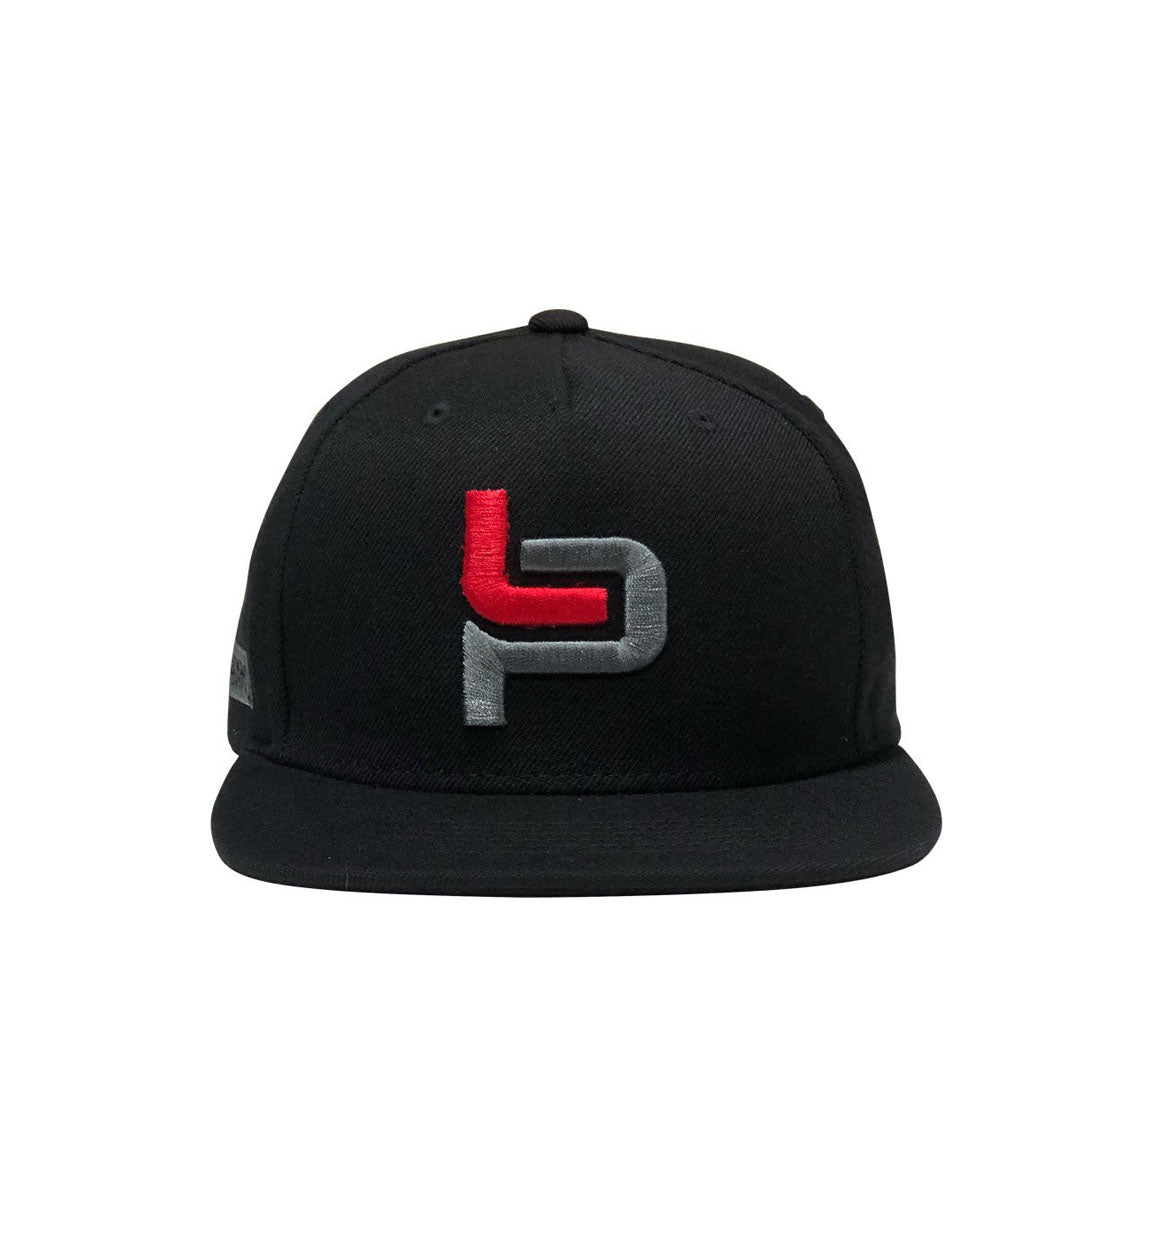 OFFICIAL Leah Pruett x Hoonigan Snapback Hat